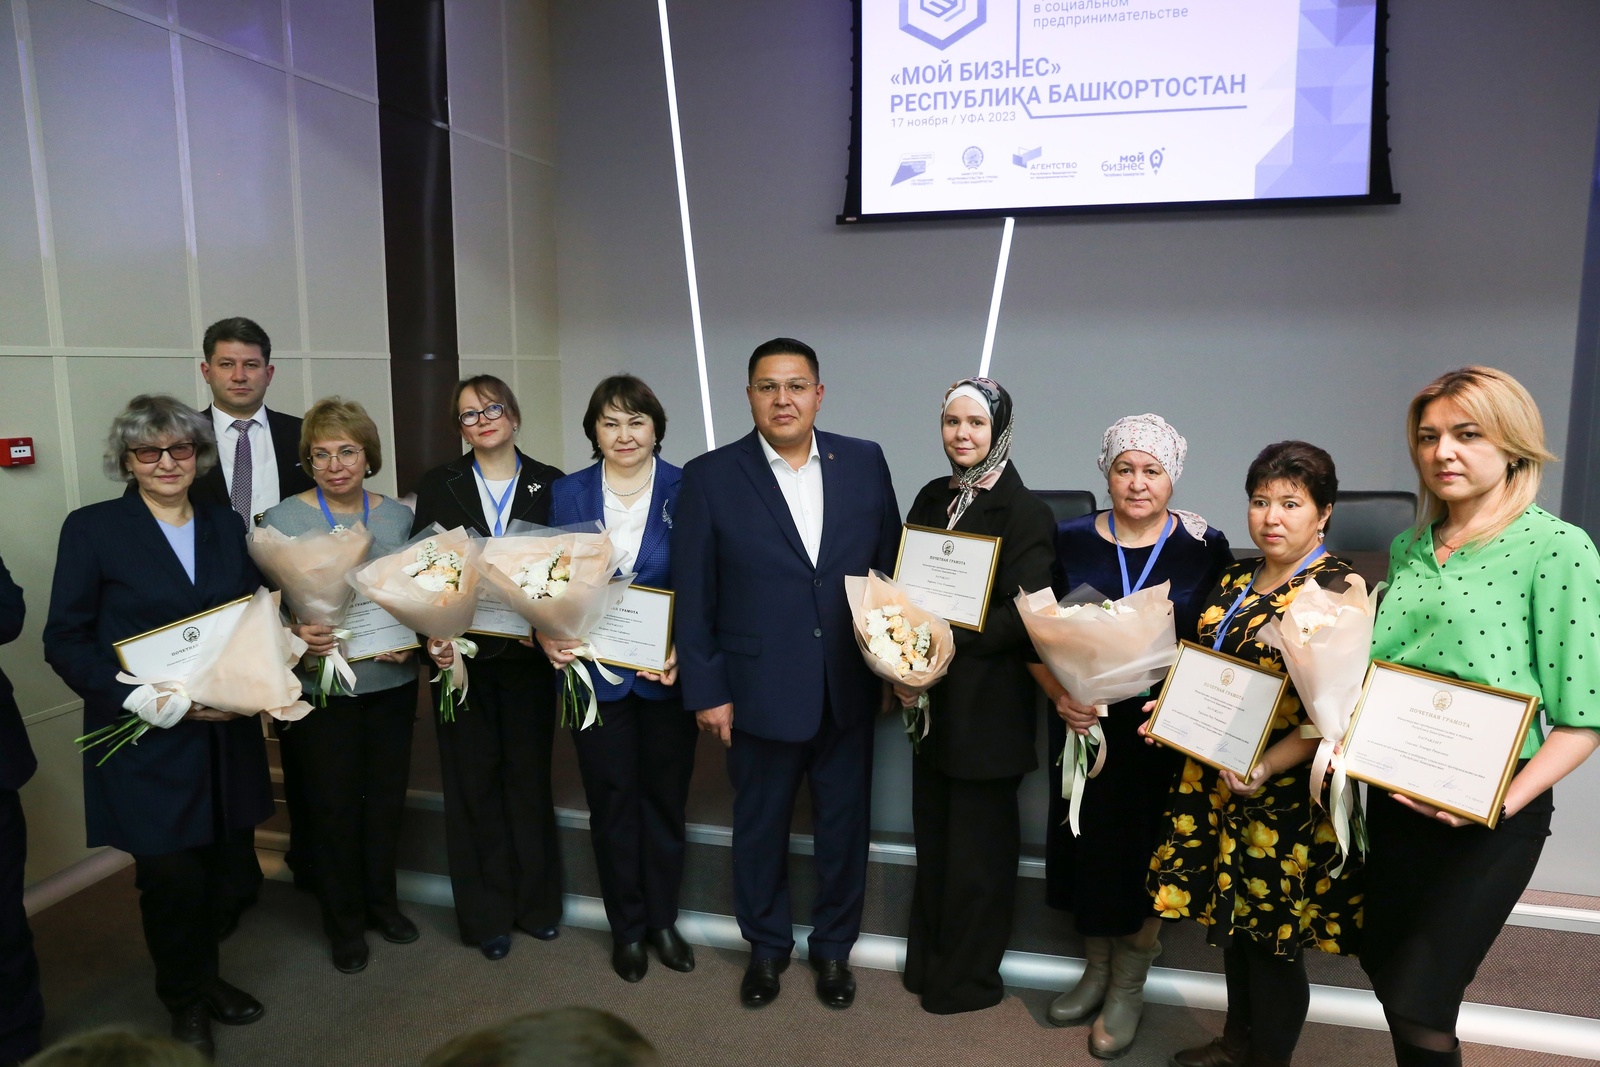 В Башкортостане 18 социальных проектов вышли на федеральный этап конкурса «Мой добрый бизнес»